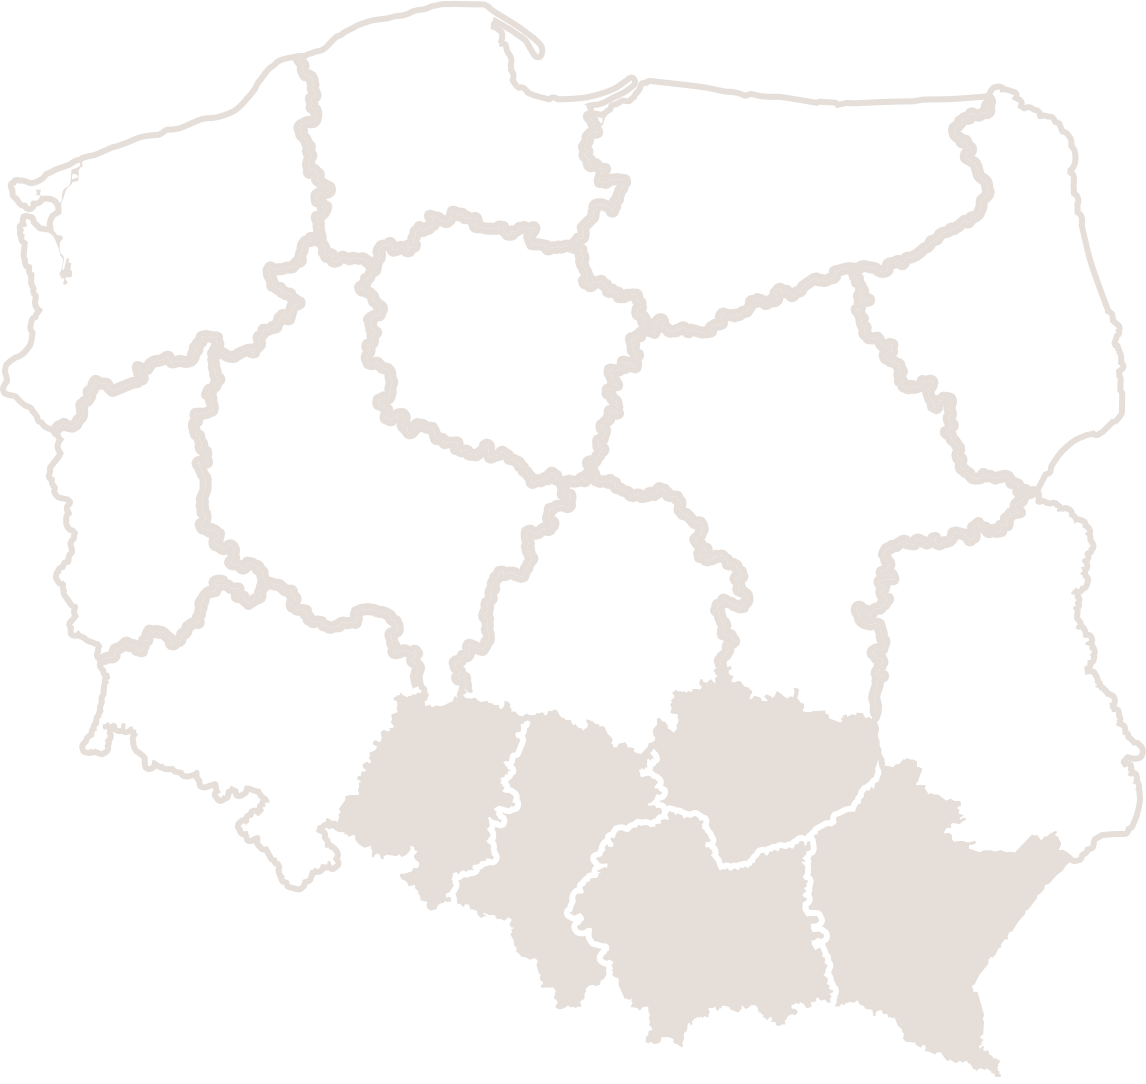 Dział handlowy - regiony: opolskie, śląskie, małopolskie, podkarpackie, świętokrzyskie